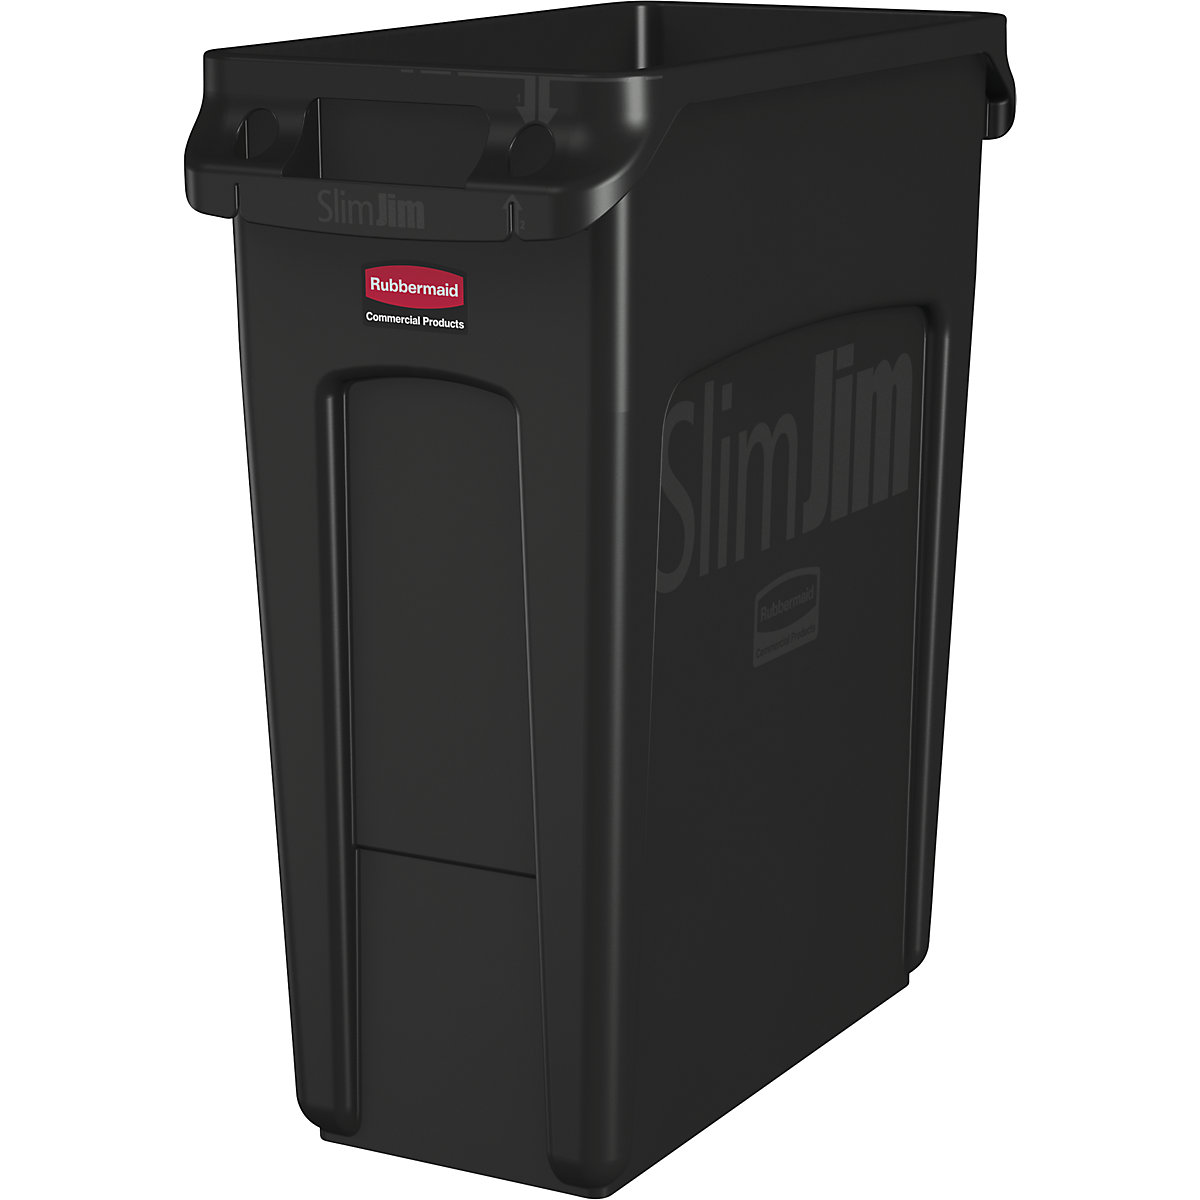 Coletor de materiais recicláveis/balde do lixo SLIM JIM® – Rubbermaid, volume 60 l, com canais de ventilação, preto-1